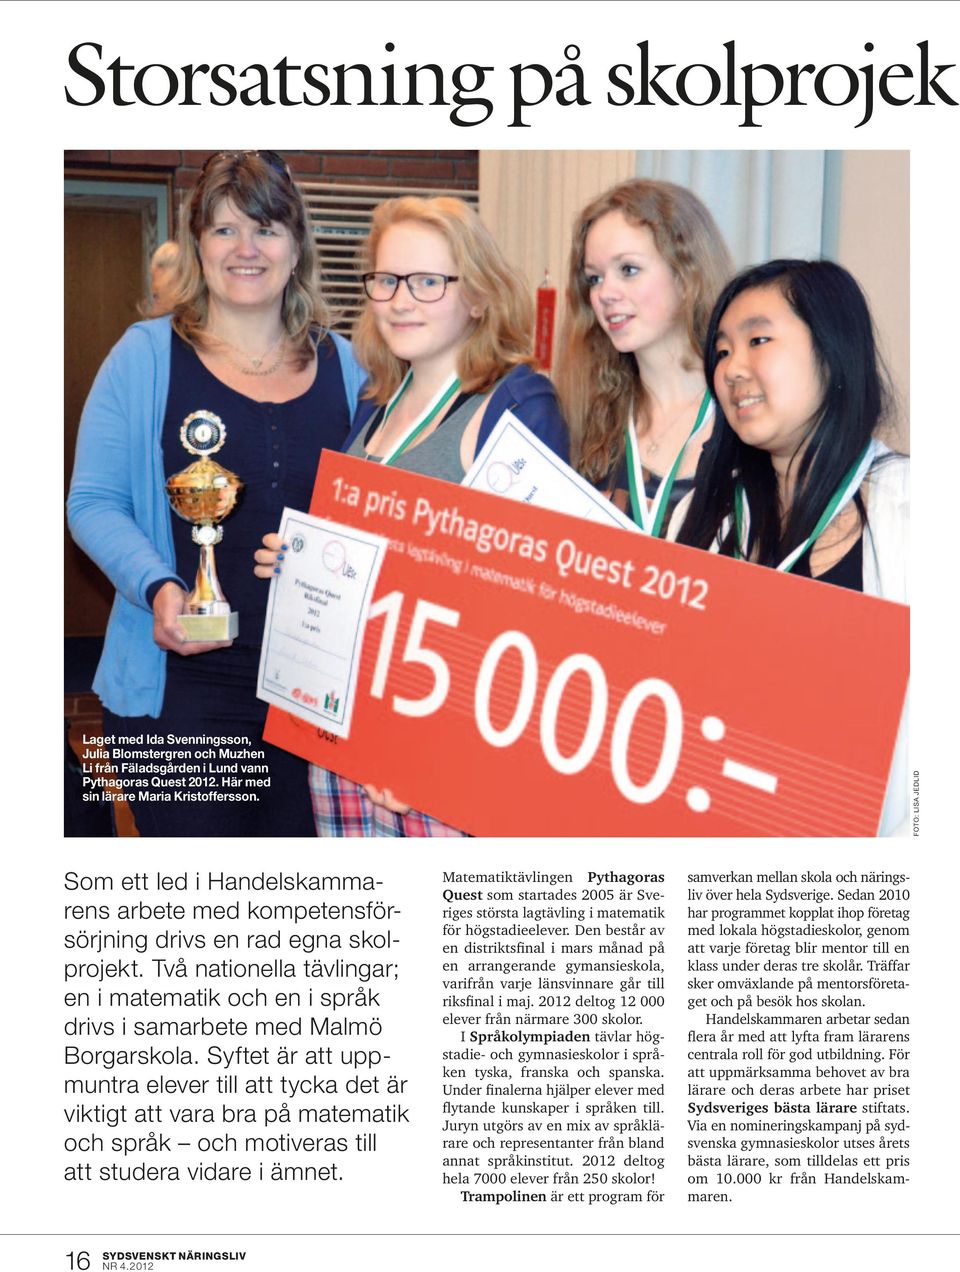 Två nationella tävlingar; en i matematik och en i språk drivs i samarbete med Malmö Borgarskola.